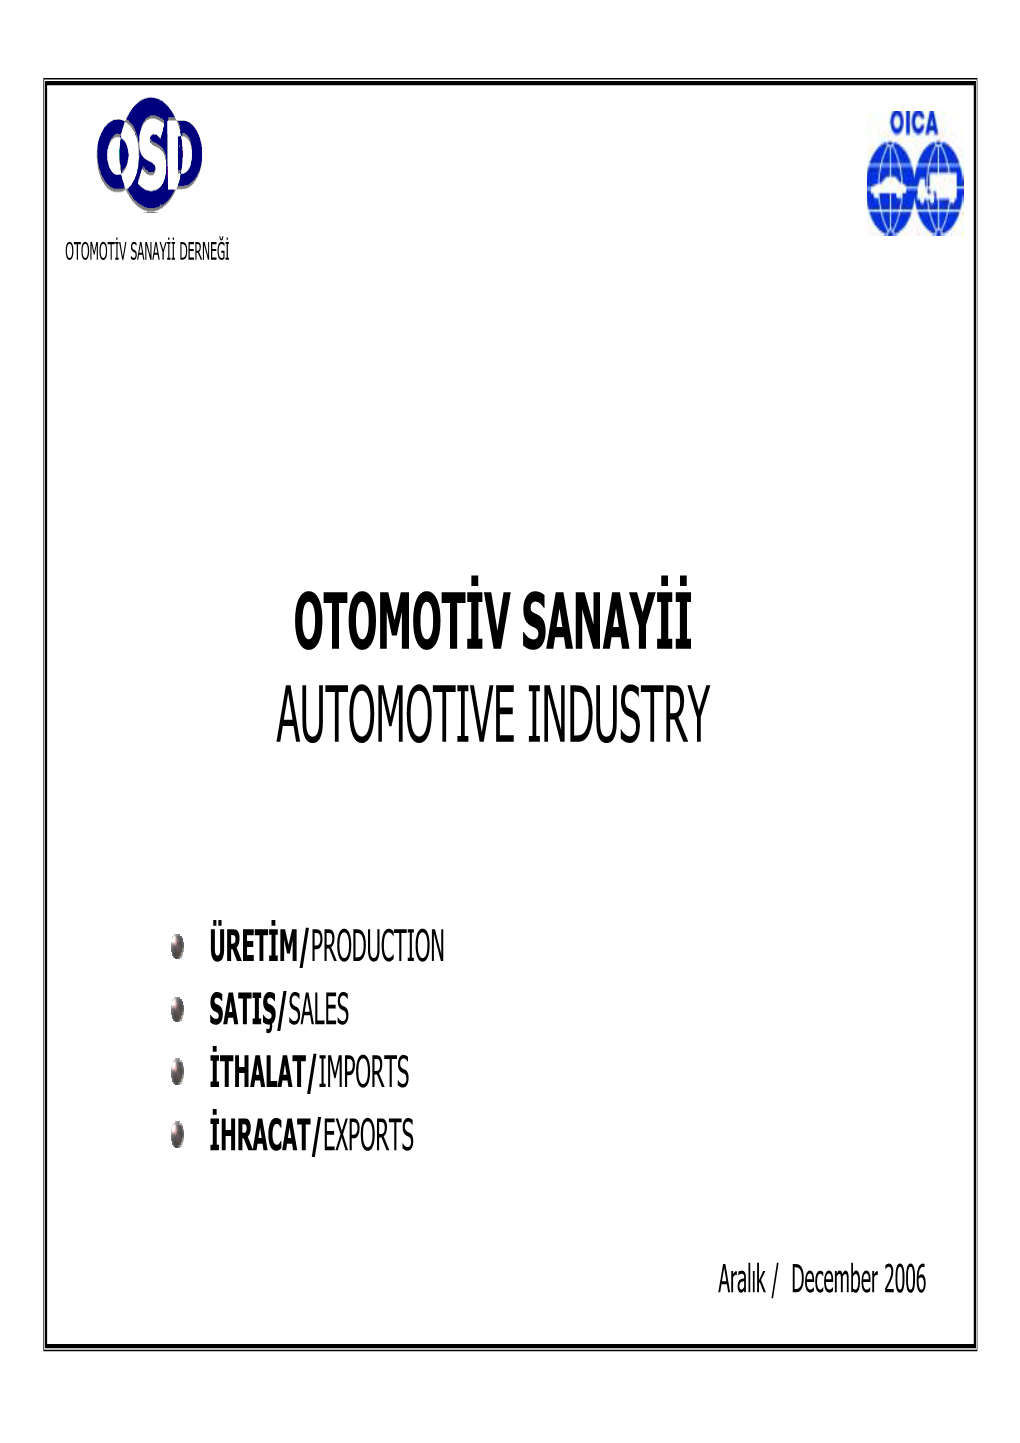 Otomotiv Sanayii Automotive Industry